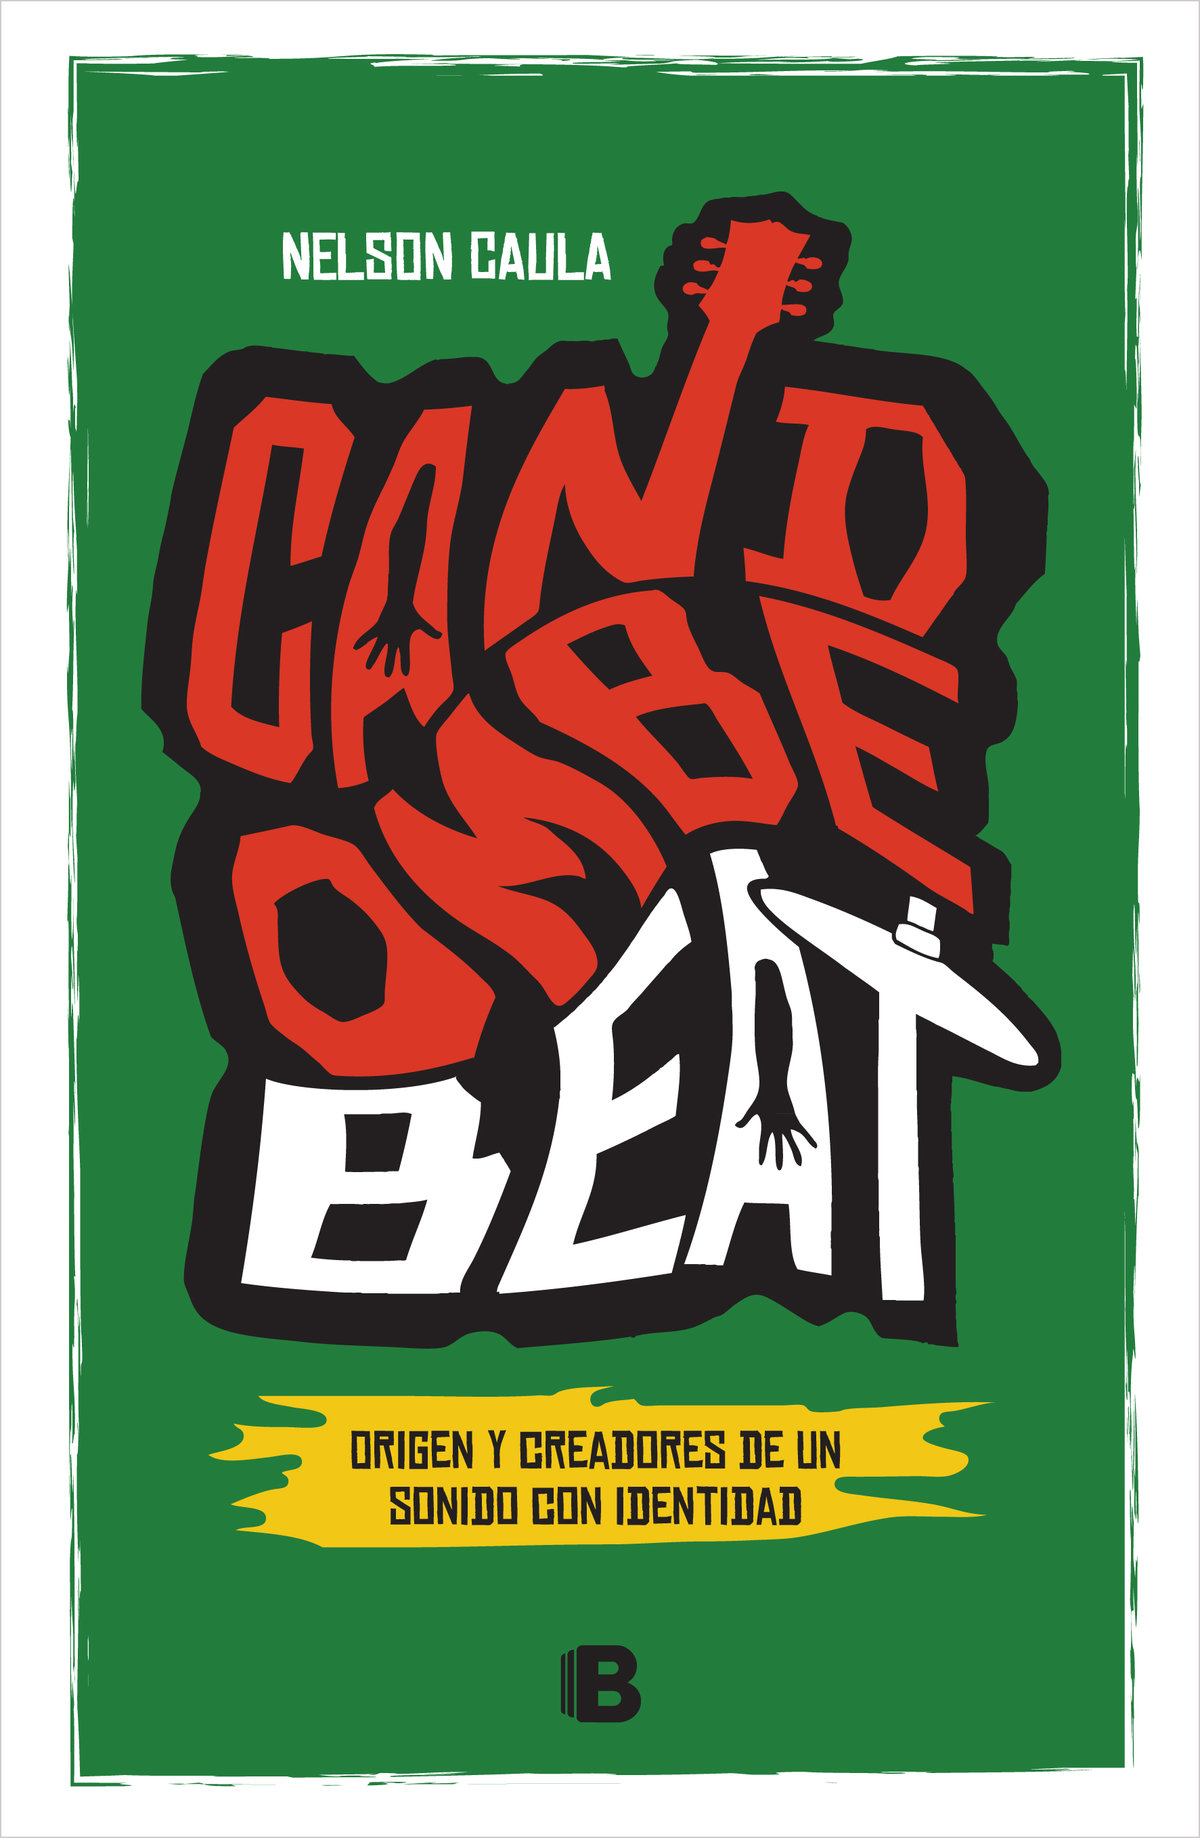 Candombe beat Orígen y creadores de un sonido con identidad - image 1